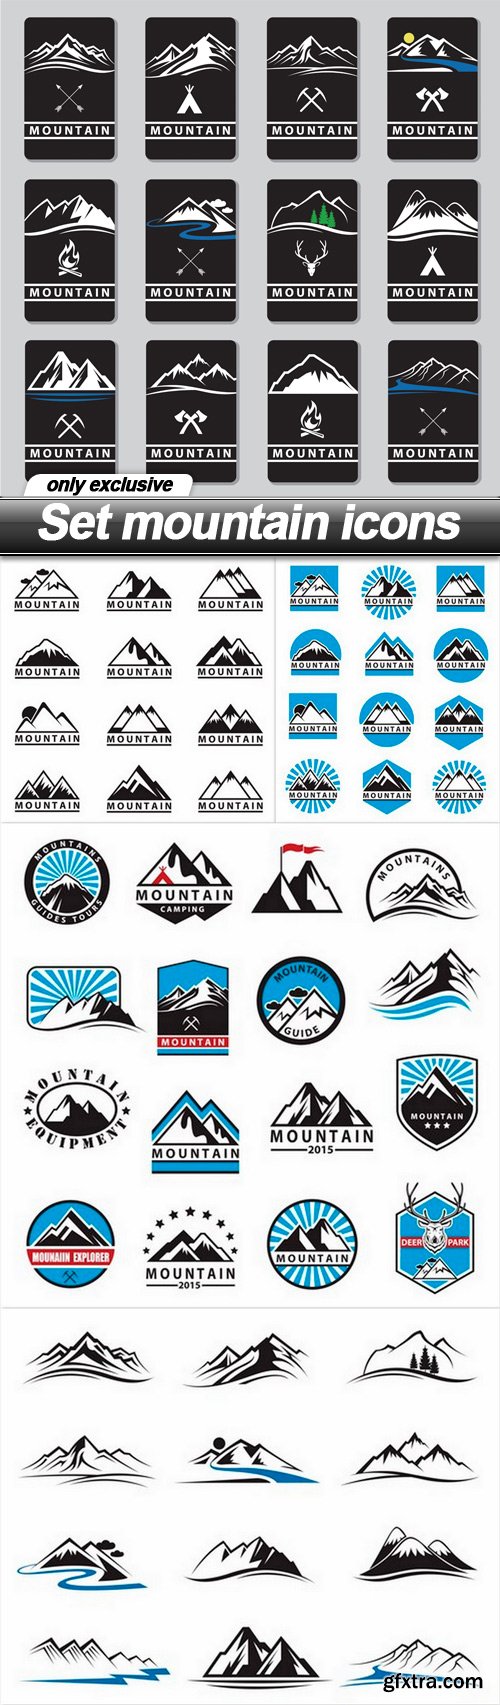 Set mountain icons - 5 EPS